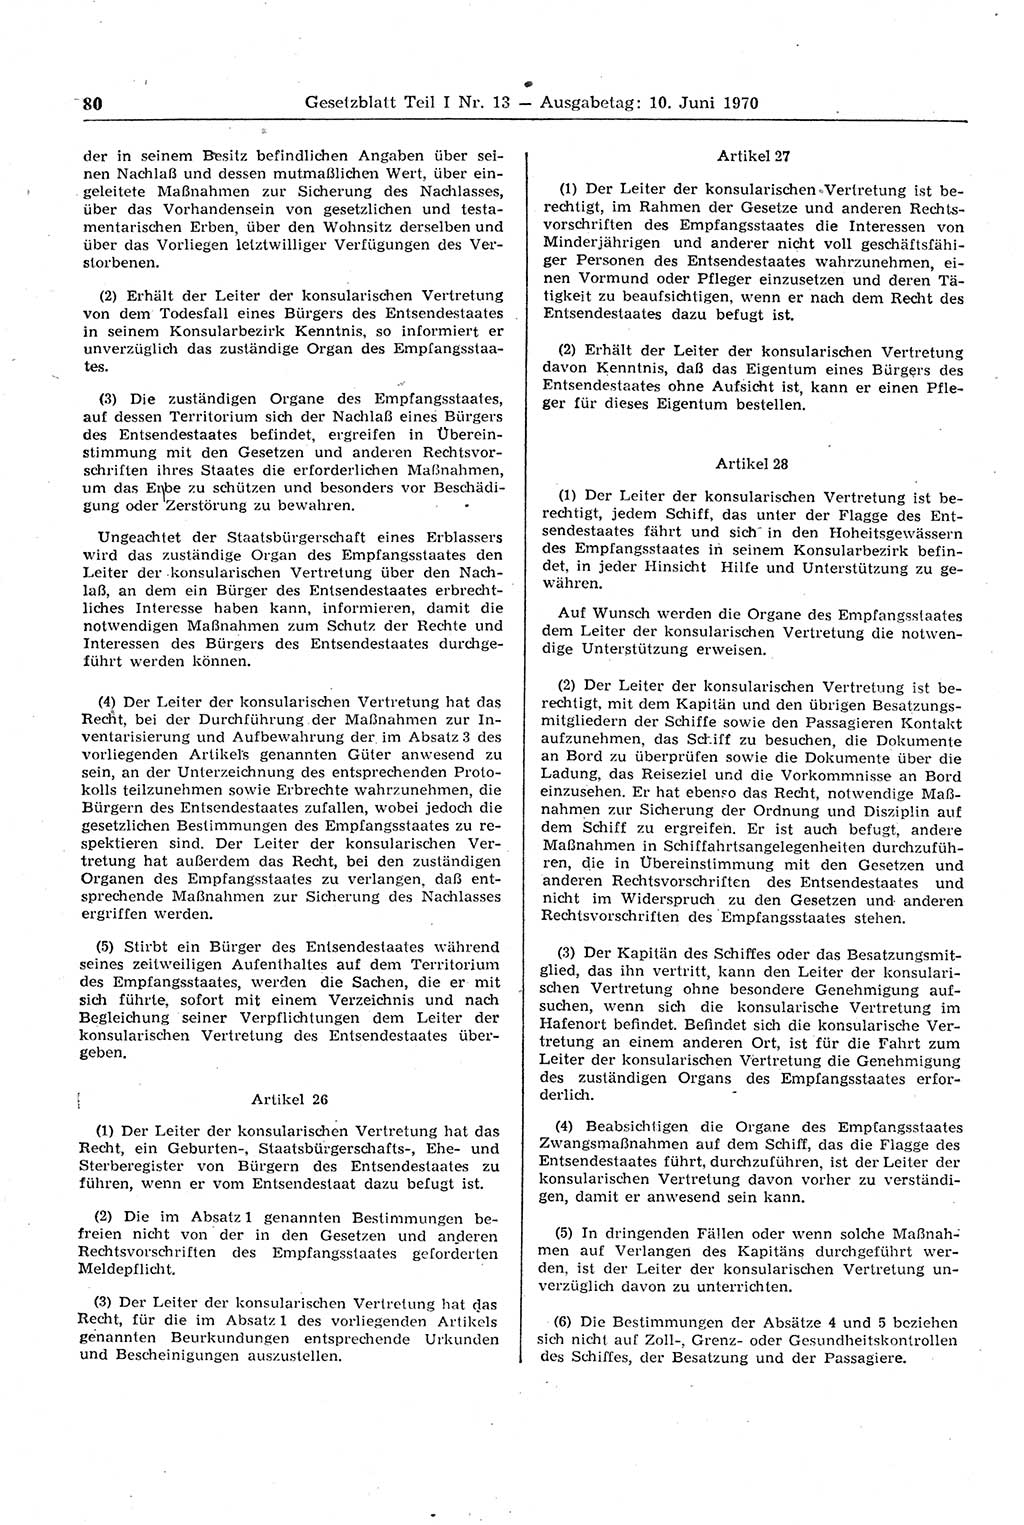 Gesetzblatt (GBl.) der Deutschen Demokratischen Republik (DDR) Teil Ⅰ 1970, Seite 80 (GBl. DDR Ⅰ 1970, S. 80)